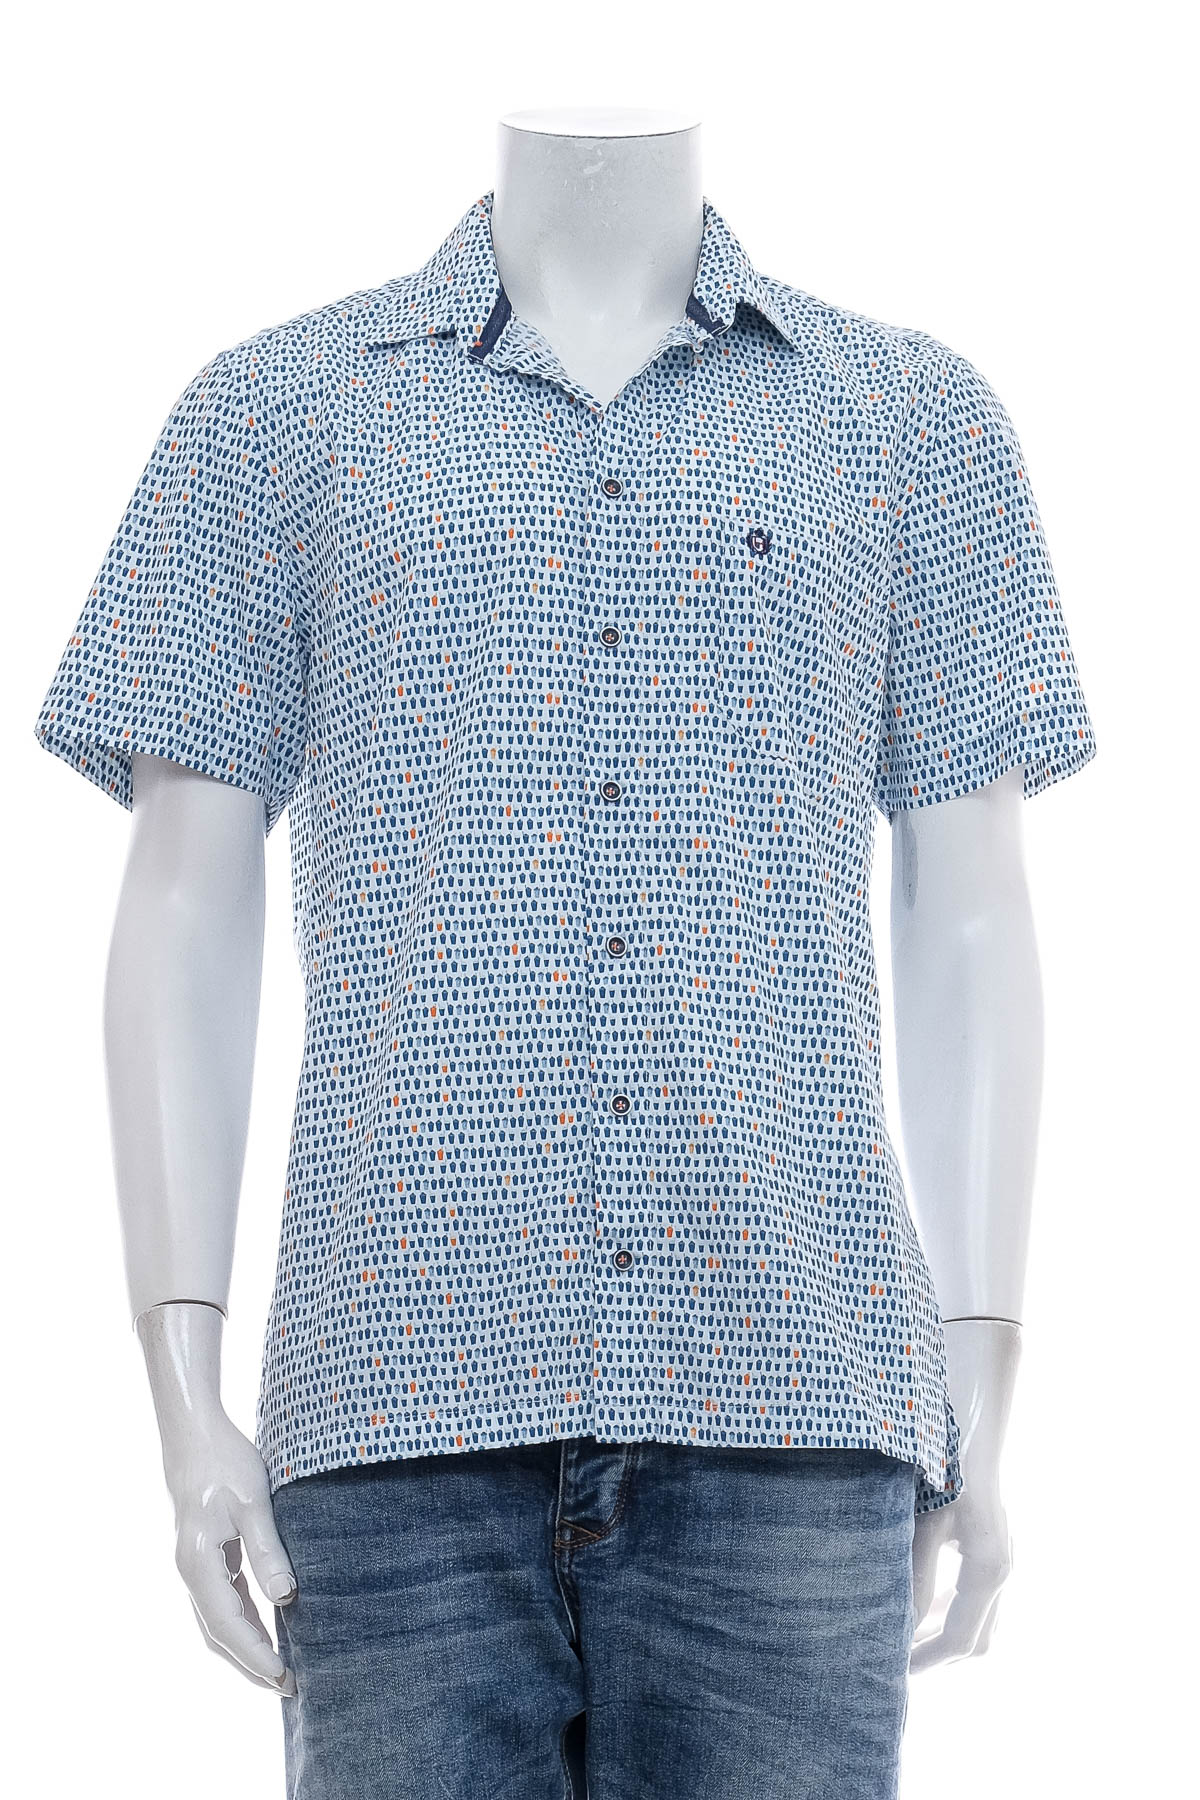 Ανδρικό πουκάμισο - Hatico - 0